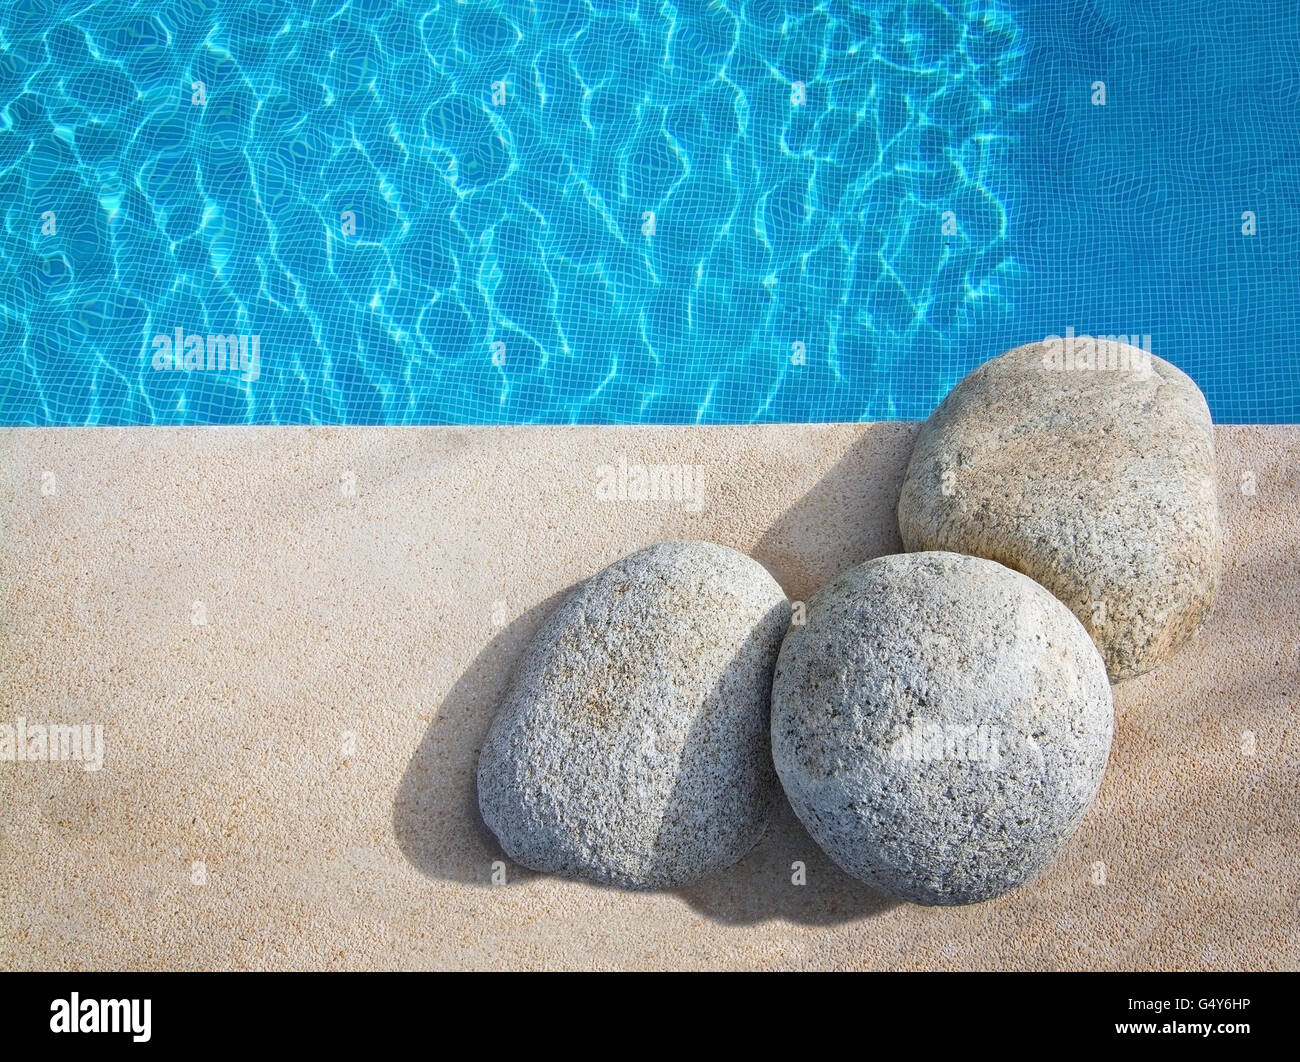 Schwimmbad-Hintergrund mit Beton, Steinen und blauen Kacheln in einer Kurve. Mallorca, Spanien. Stockfoto